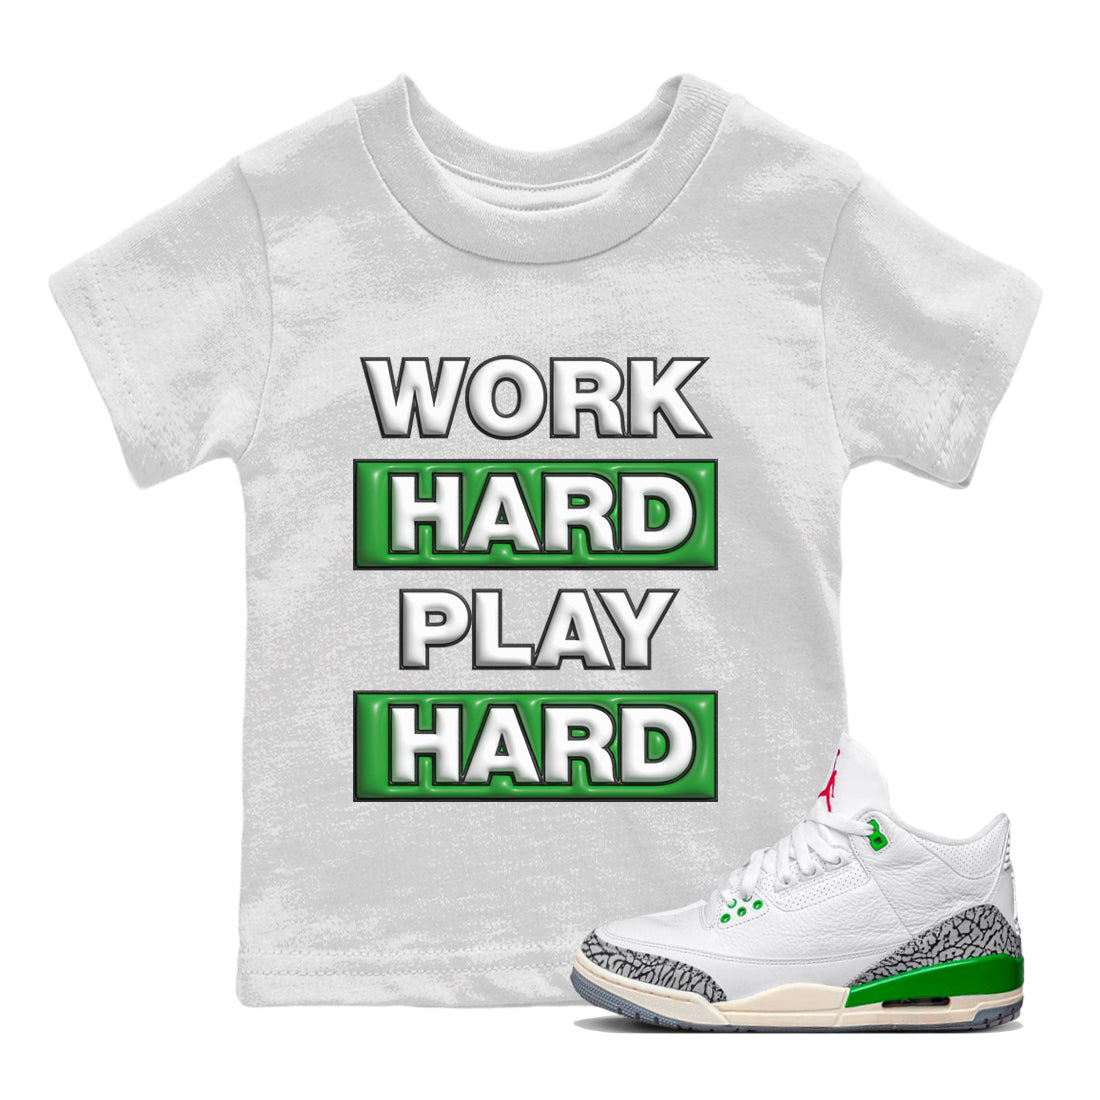 Air Jordan 3 Lucky Green Sneaker Tees Drip Gear Zone Work Hard Play Hard Sneaker Tees AJ3 Lucky Green Shirt Kids Shirts White 1